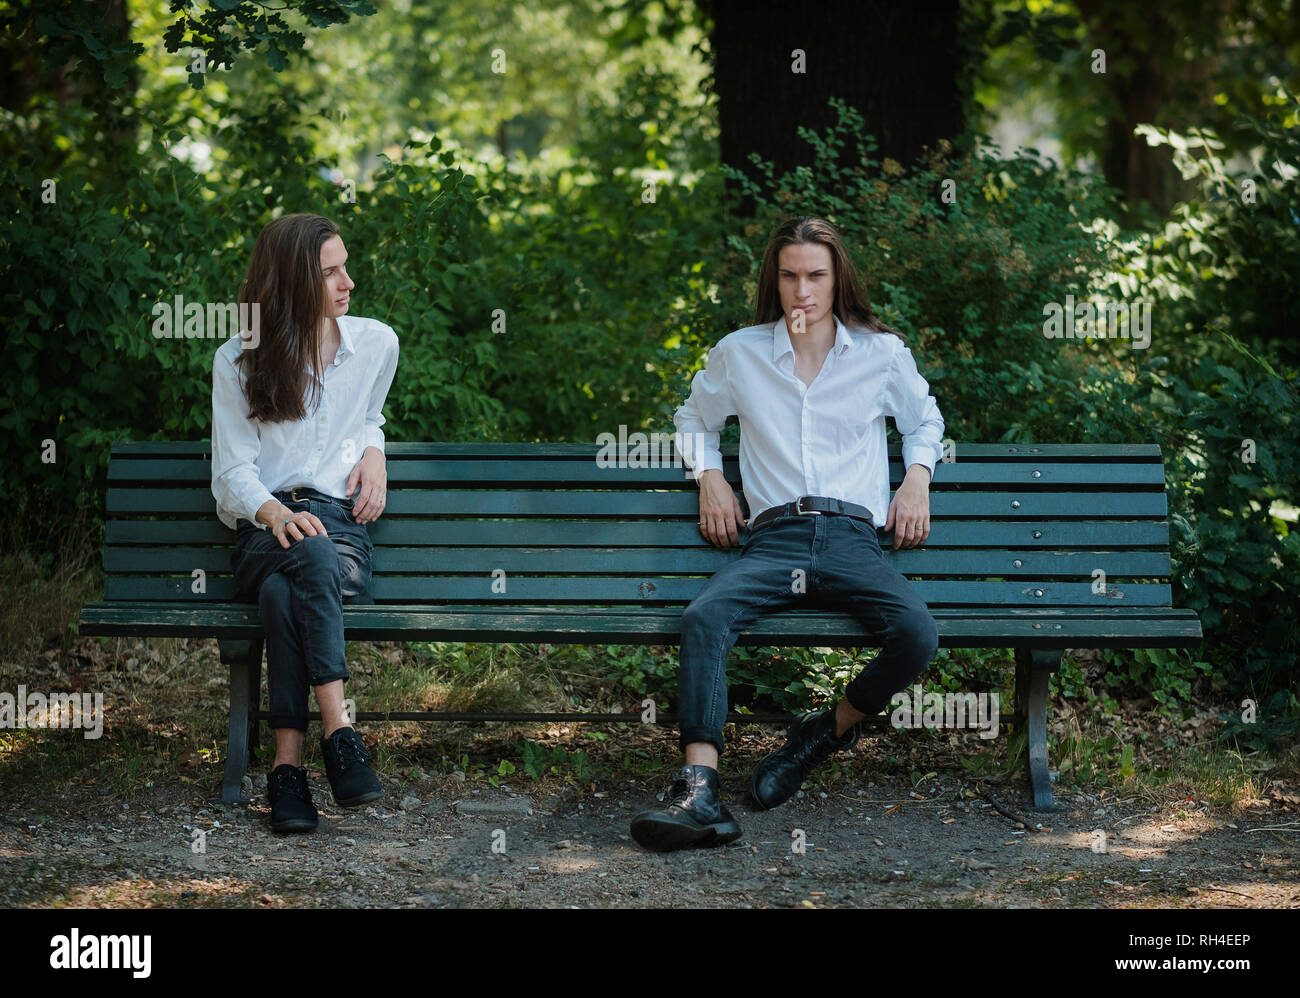 Immagini multiple uomo seduto su una panchina nel parco con le gambe incrociate e gambe divaricate Foto Stock